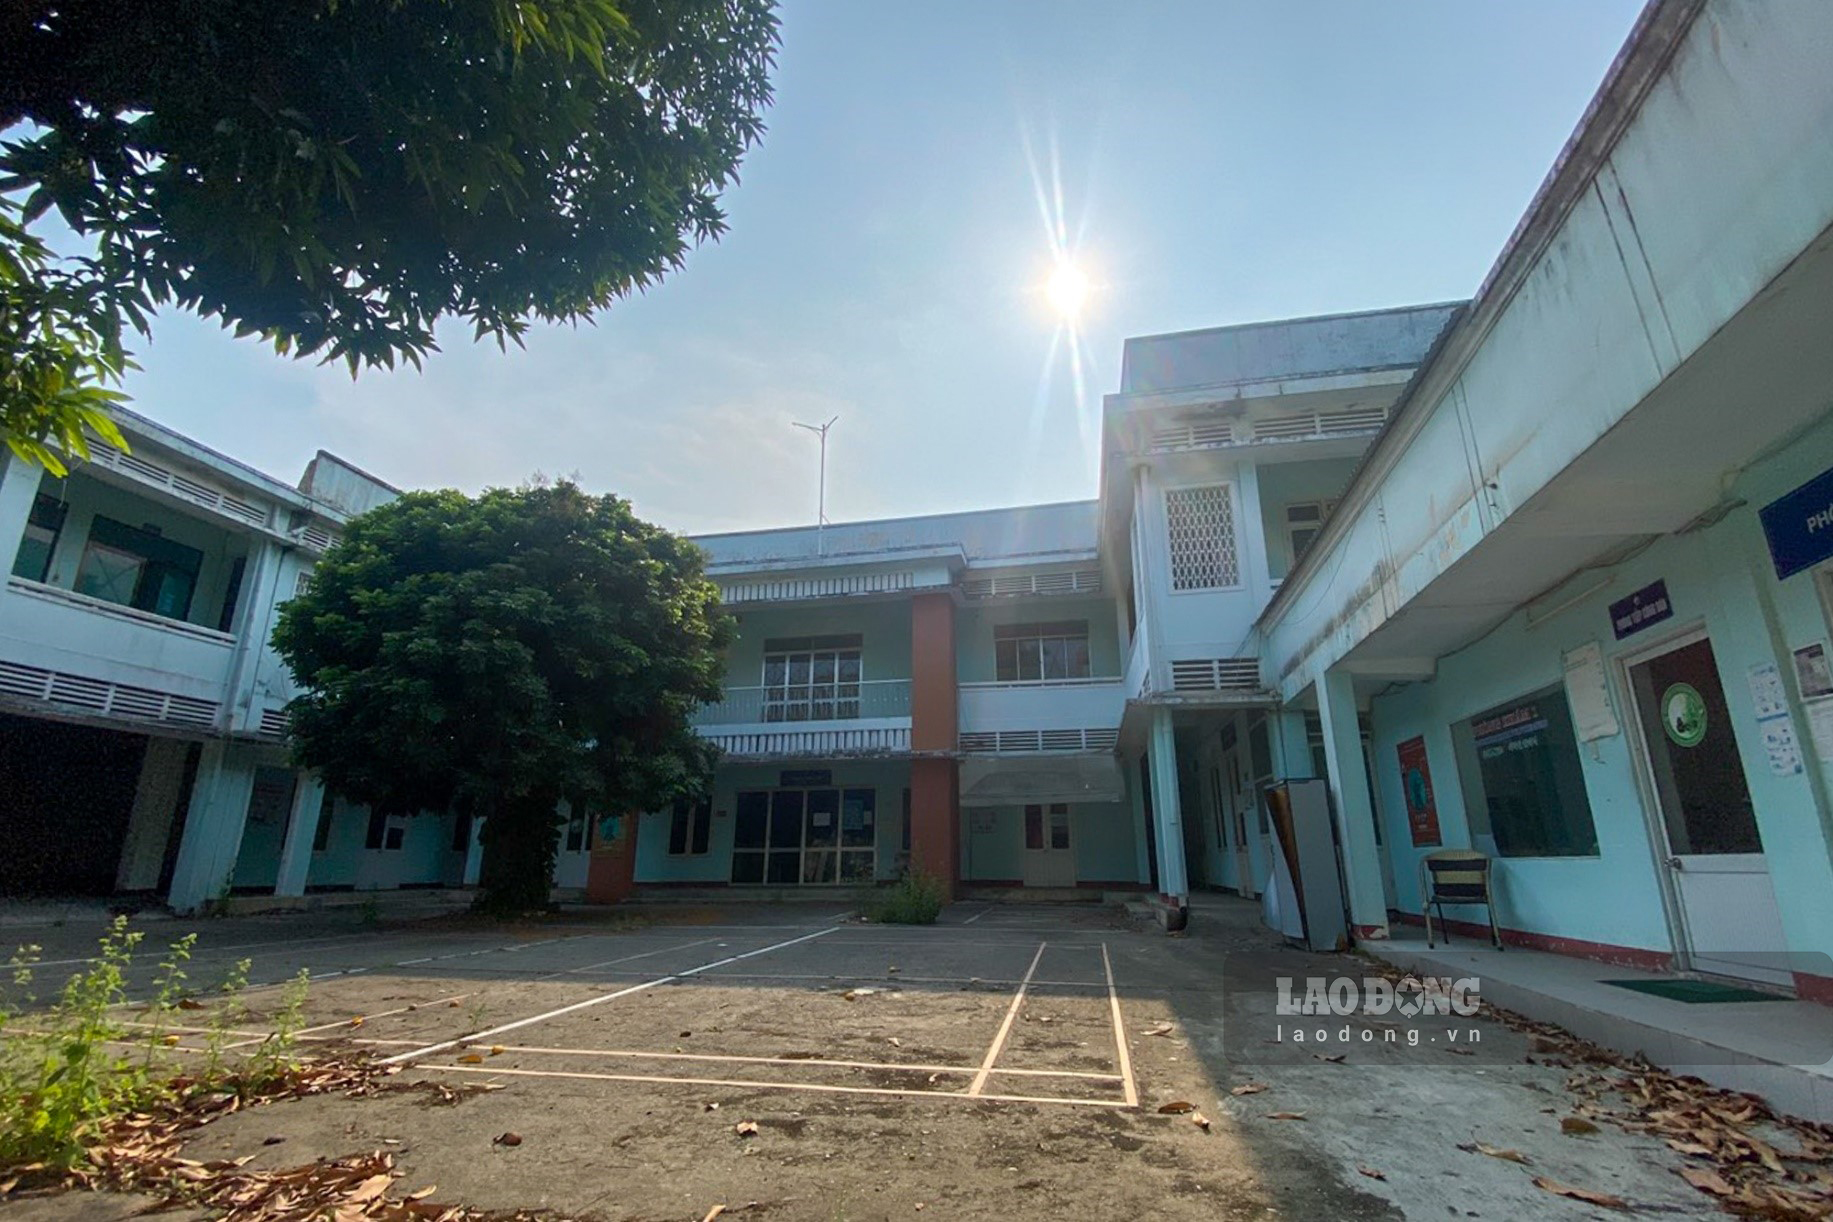 Nhà đất số 342 Phan Châu Trinh (P. Bình Thuận) với diện tích đất gần 1.480m2. Nơi đây từng được sử dụng làm trụ sở làm việc (cơ sở 2) của Bệnh viện Y học cổ truyền, sắp tới sẽ được chuyển đổi để xây dựng trường mầm non.